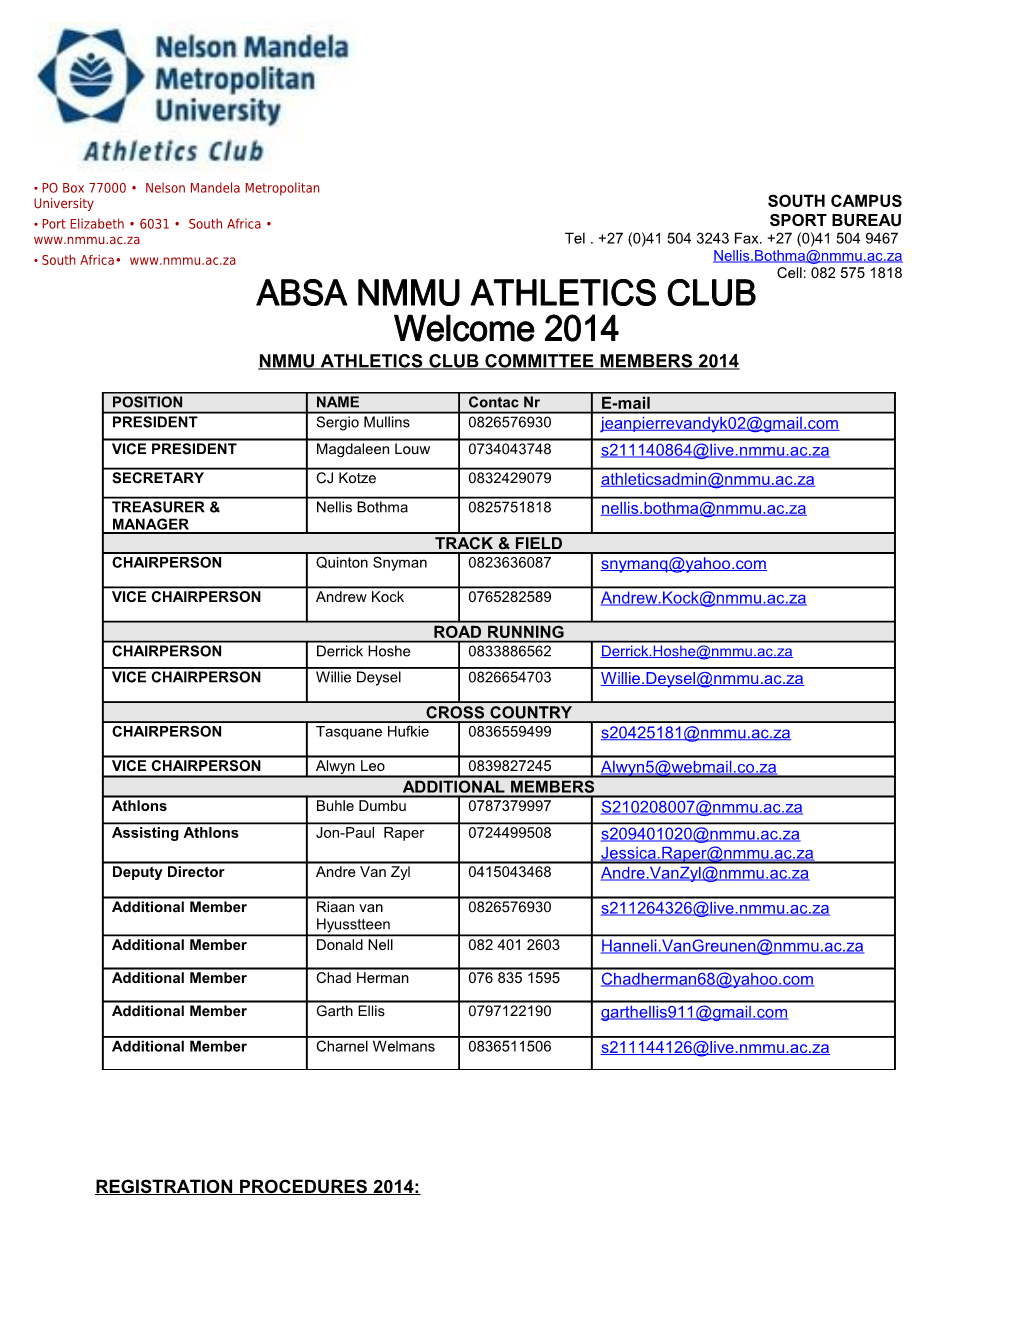 Nmmu Athletics Club Committee Members 2014